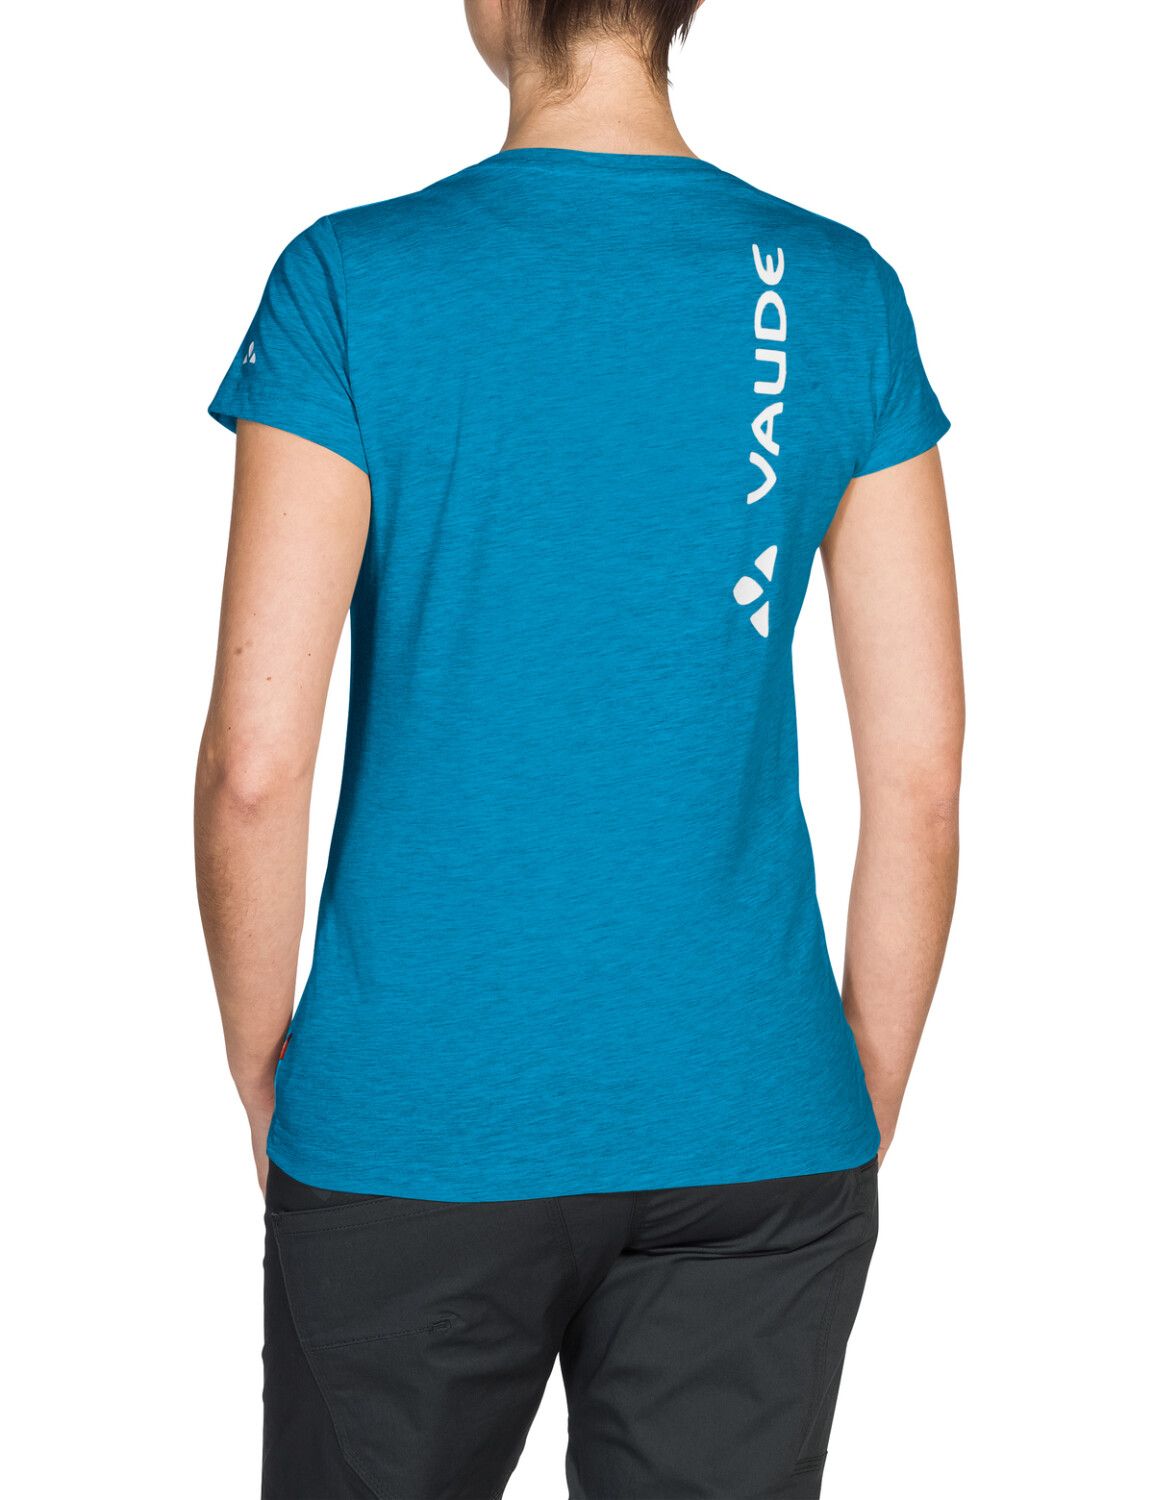 VAUDE Women's Brand Shirt (Bild 1)